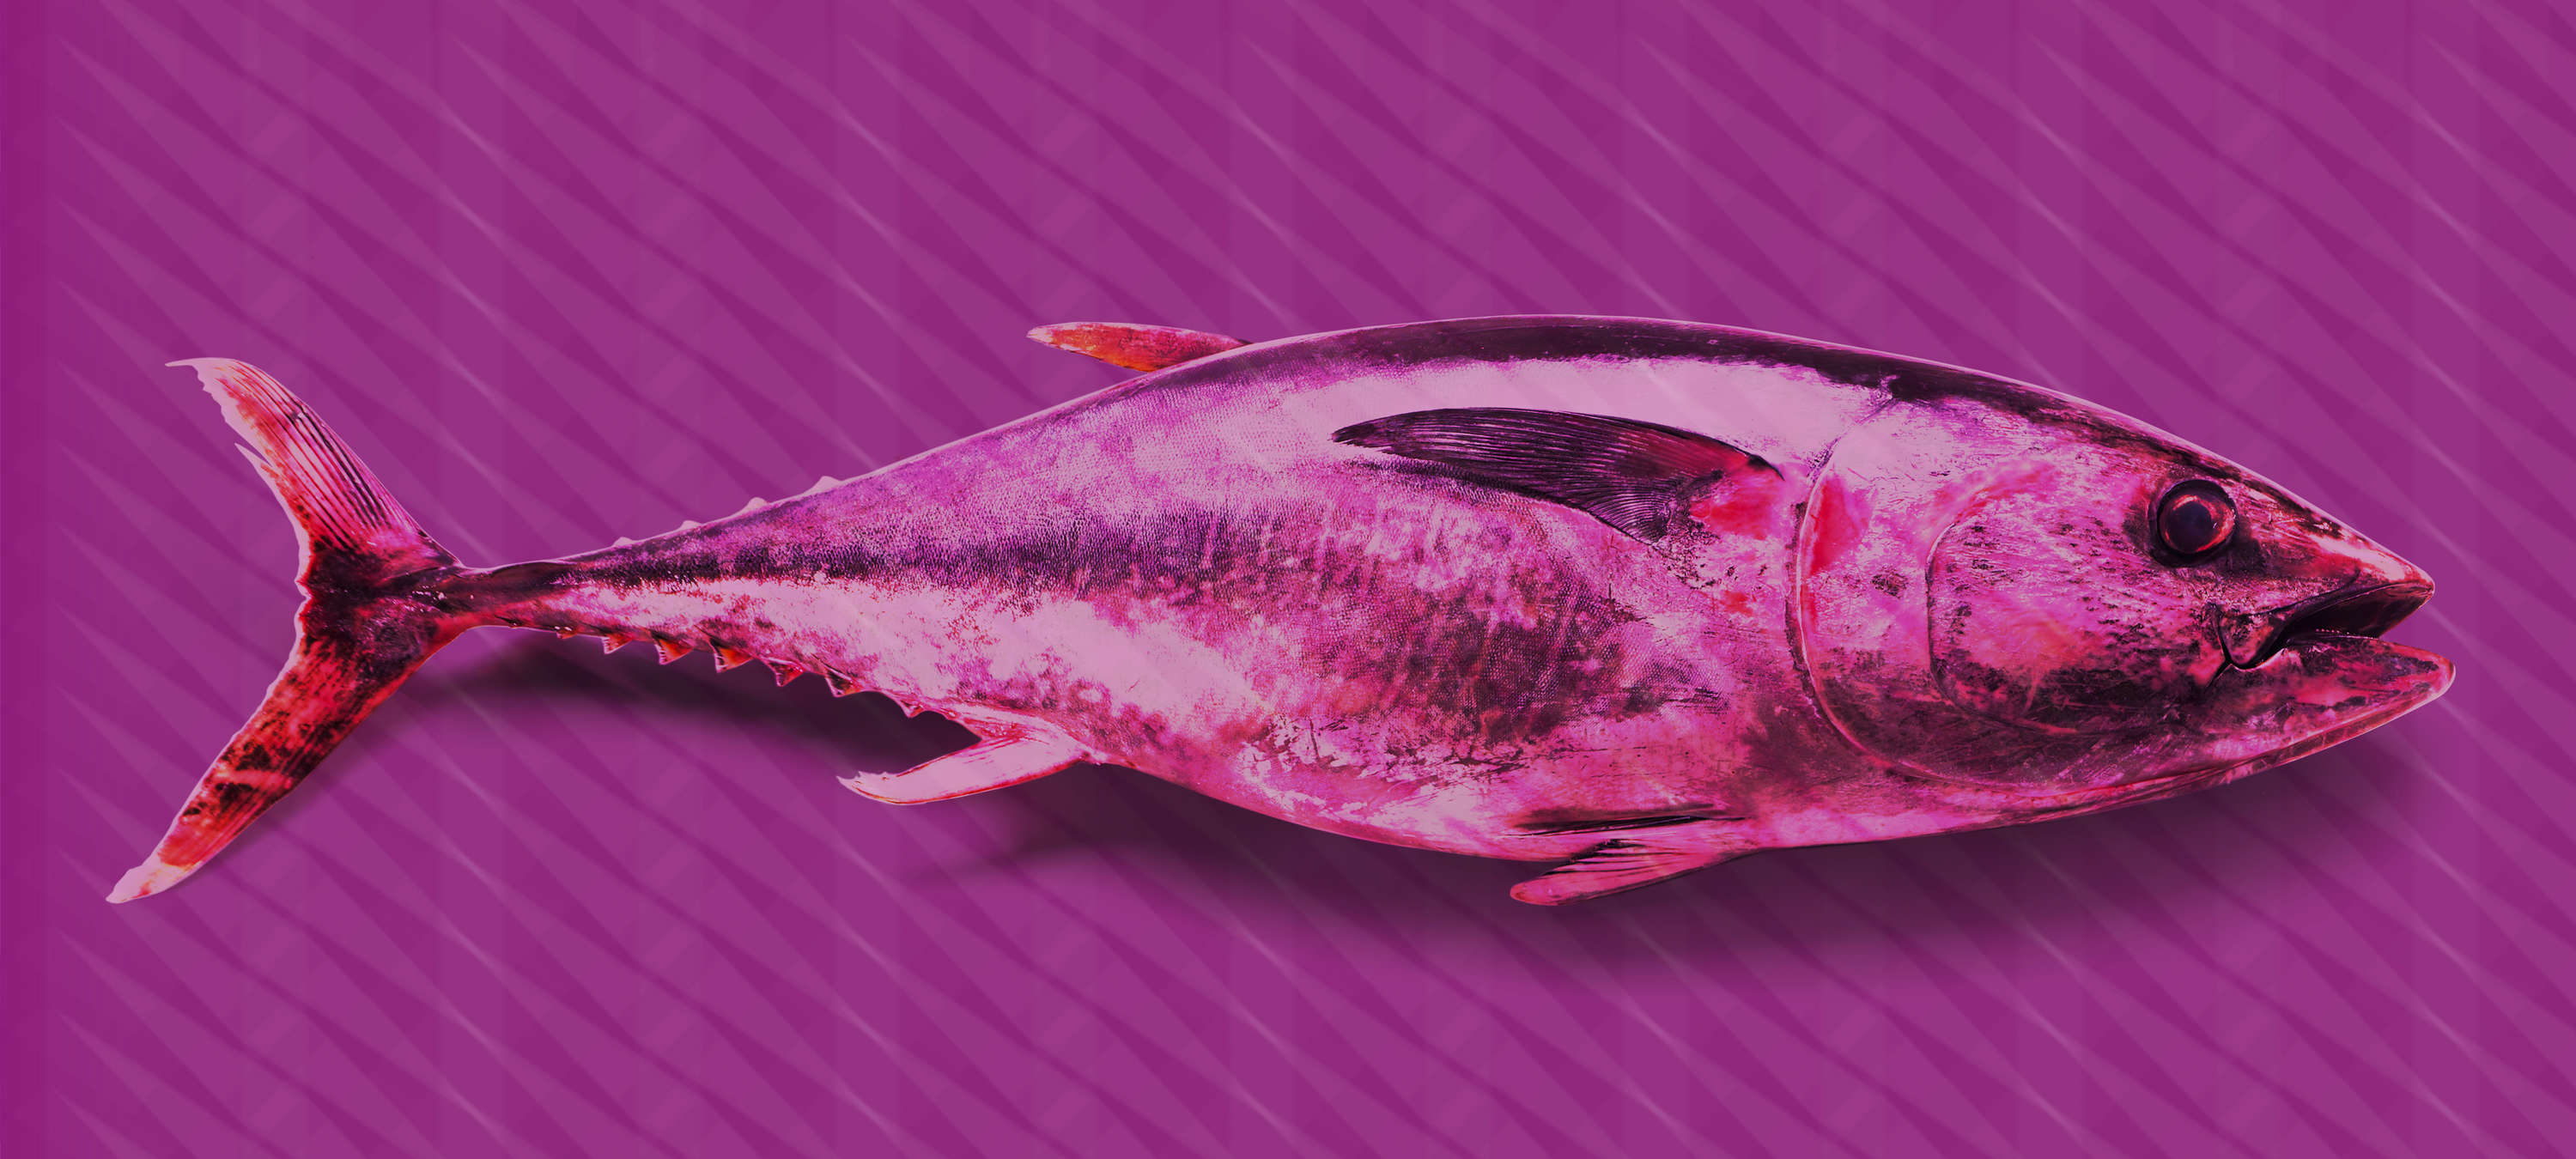             Thunfisch-Fototapete im Pop Art Stil – Violett, Rosa, Rot – Perlmutt Glattvlies
        